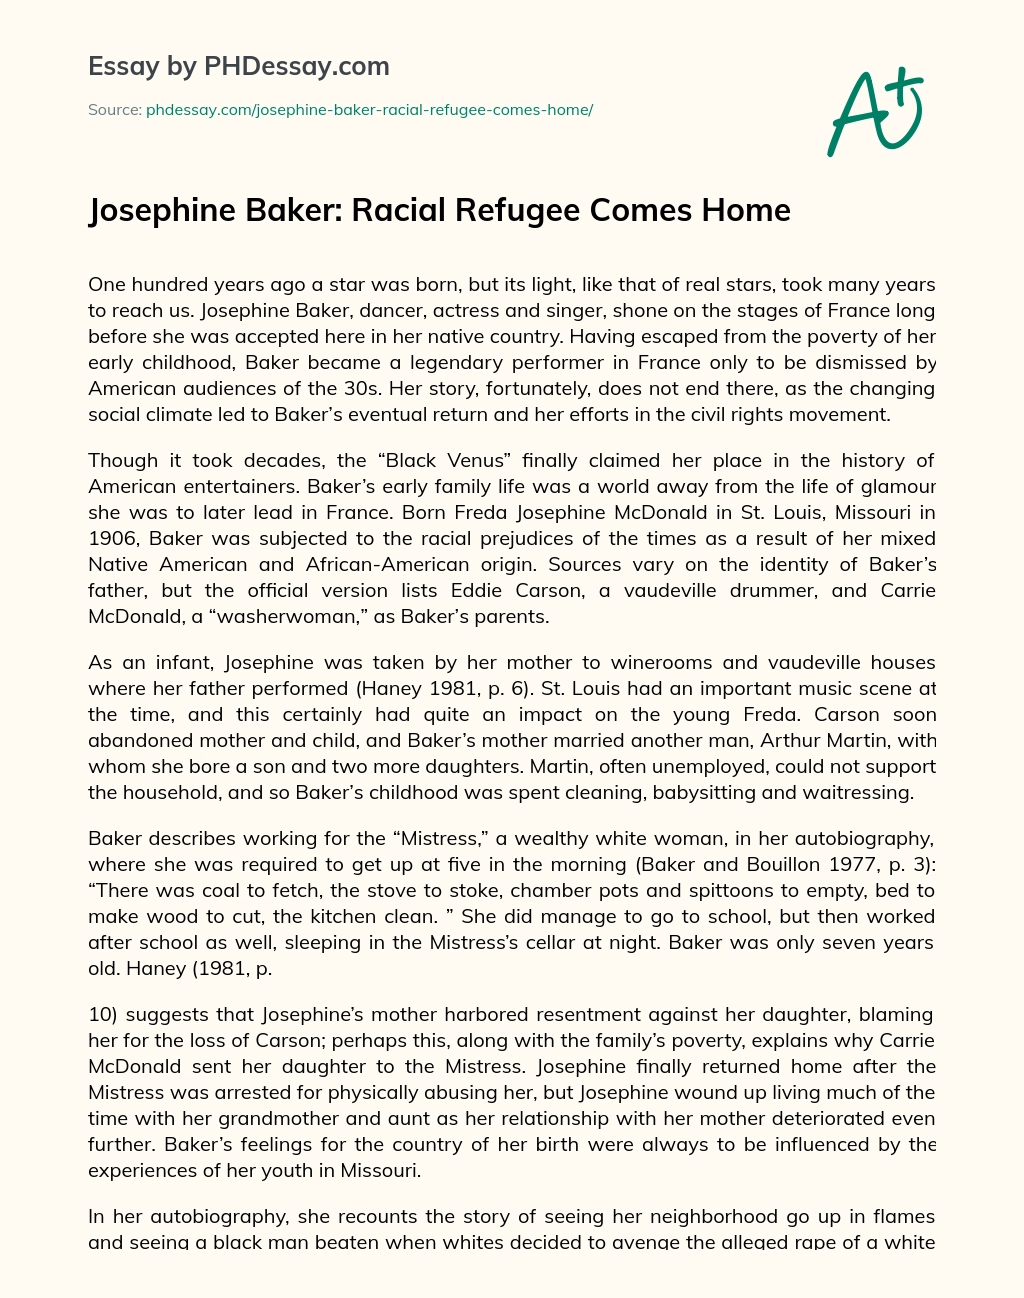 Josephine Baker: Racial Refugee Comes Home essay